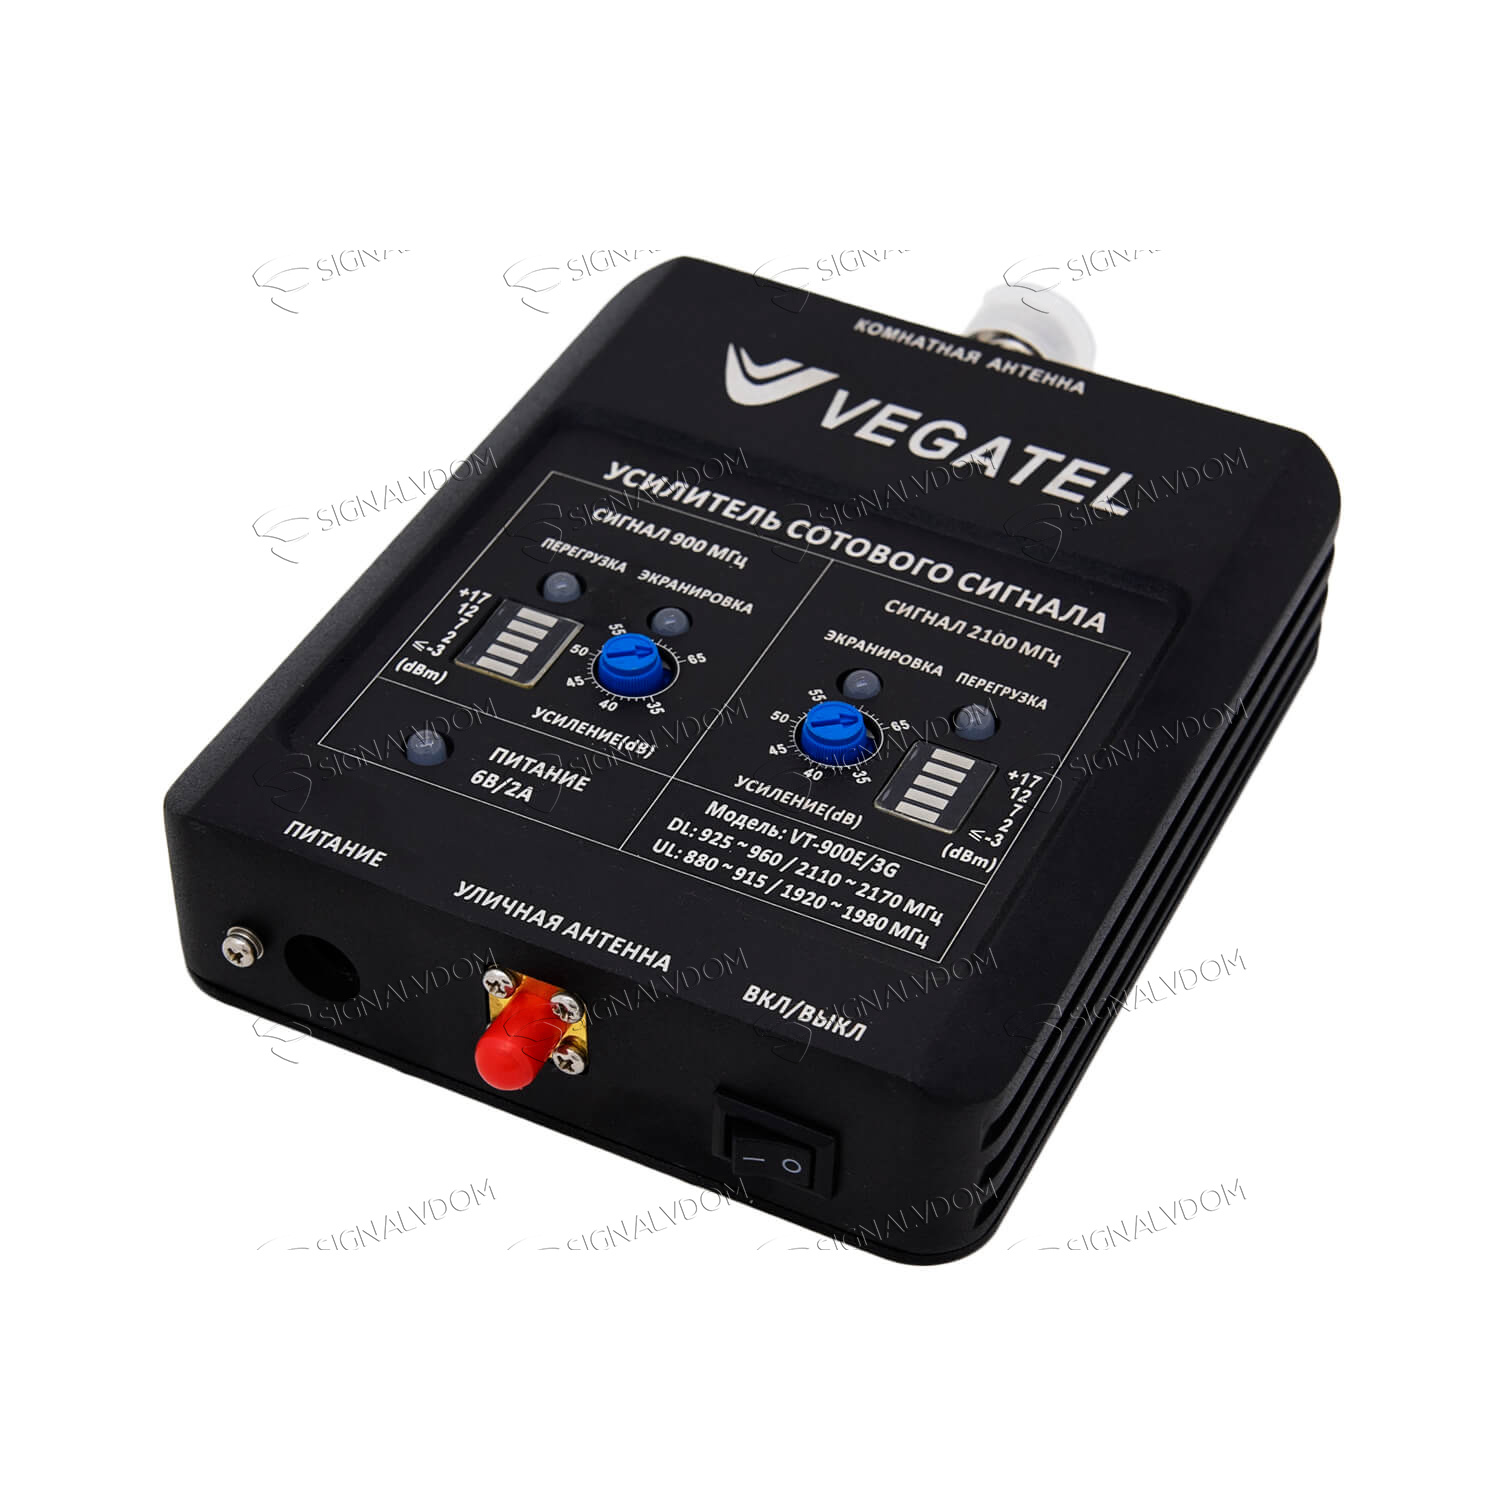 Усилитель сигнала сотовой связи VEGATEL VT-900E/3G (LED) комплект - 5